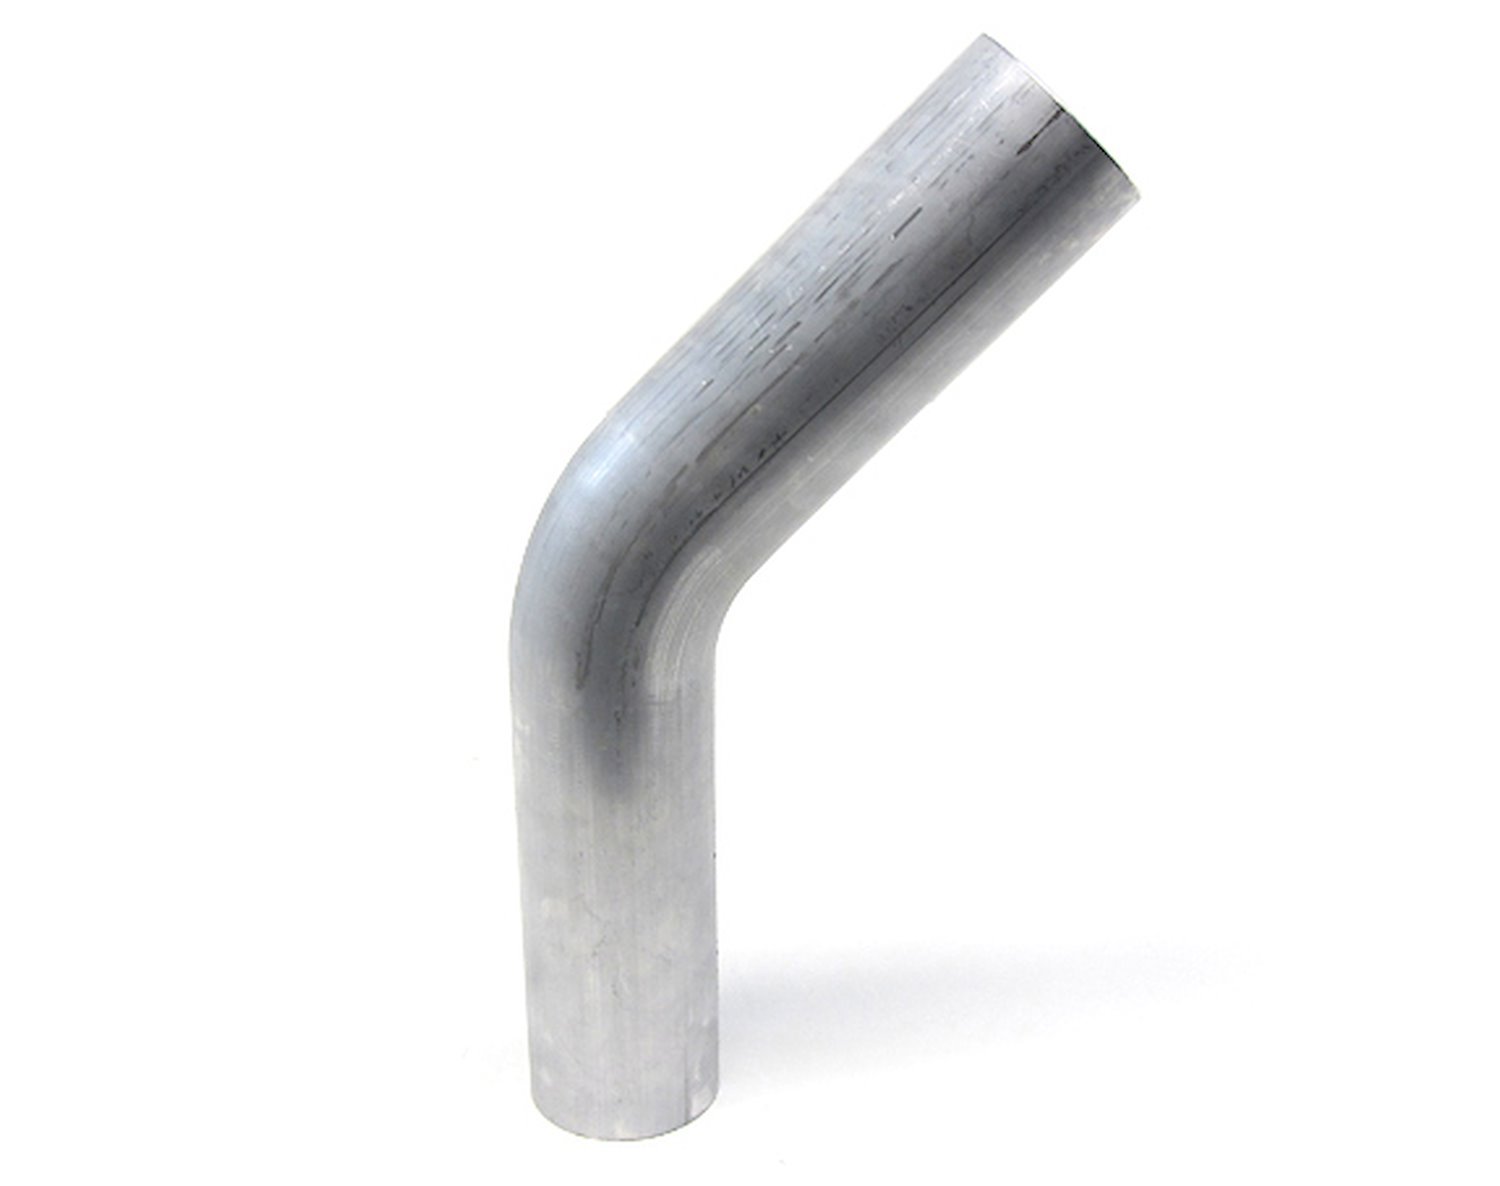 AT45-125-CLR-2 Aluminum Elbow Tube, 6061 Aluminum, 45-Degree Bend Elbow Tubing, 1-1/4 in. OD, Tight Radius, 2 in. CLR